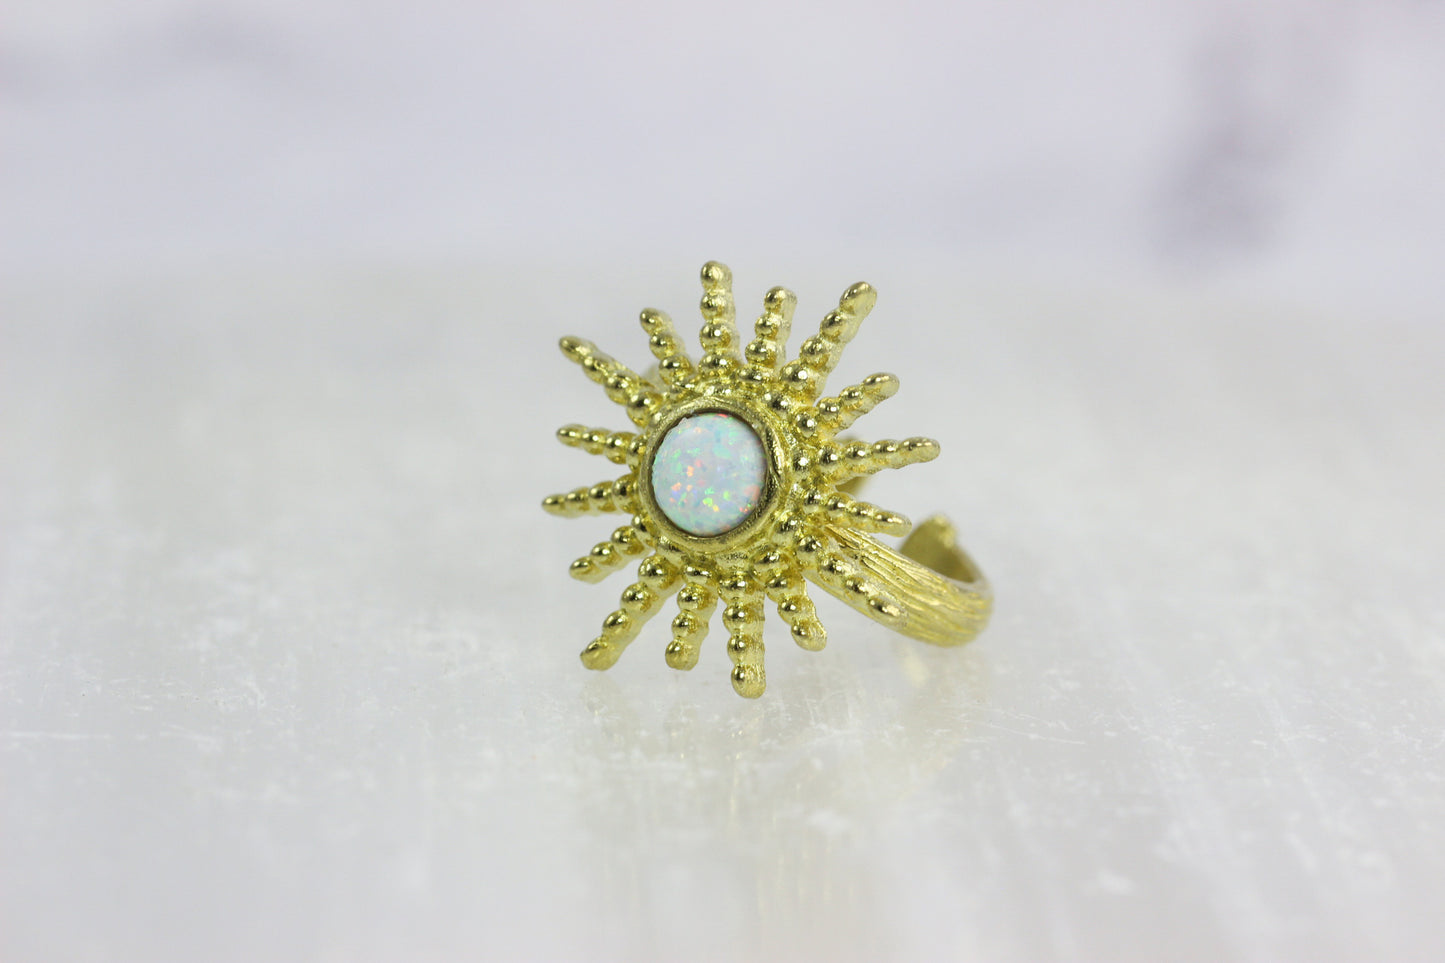 Opal Sunburst Ring